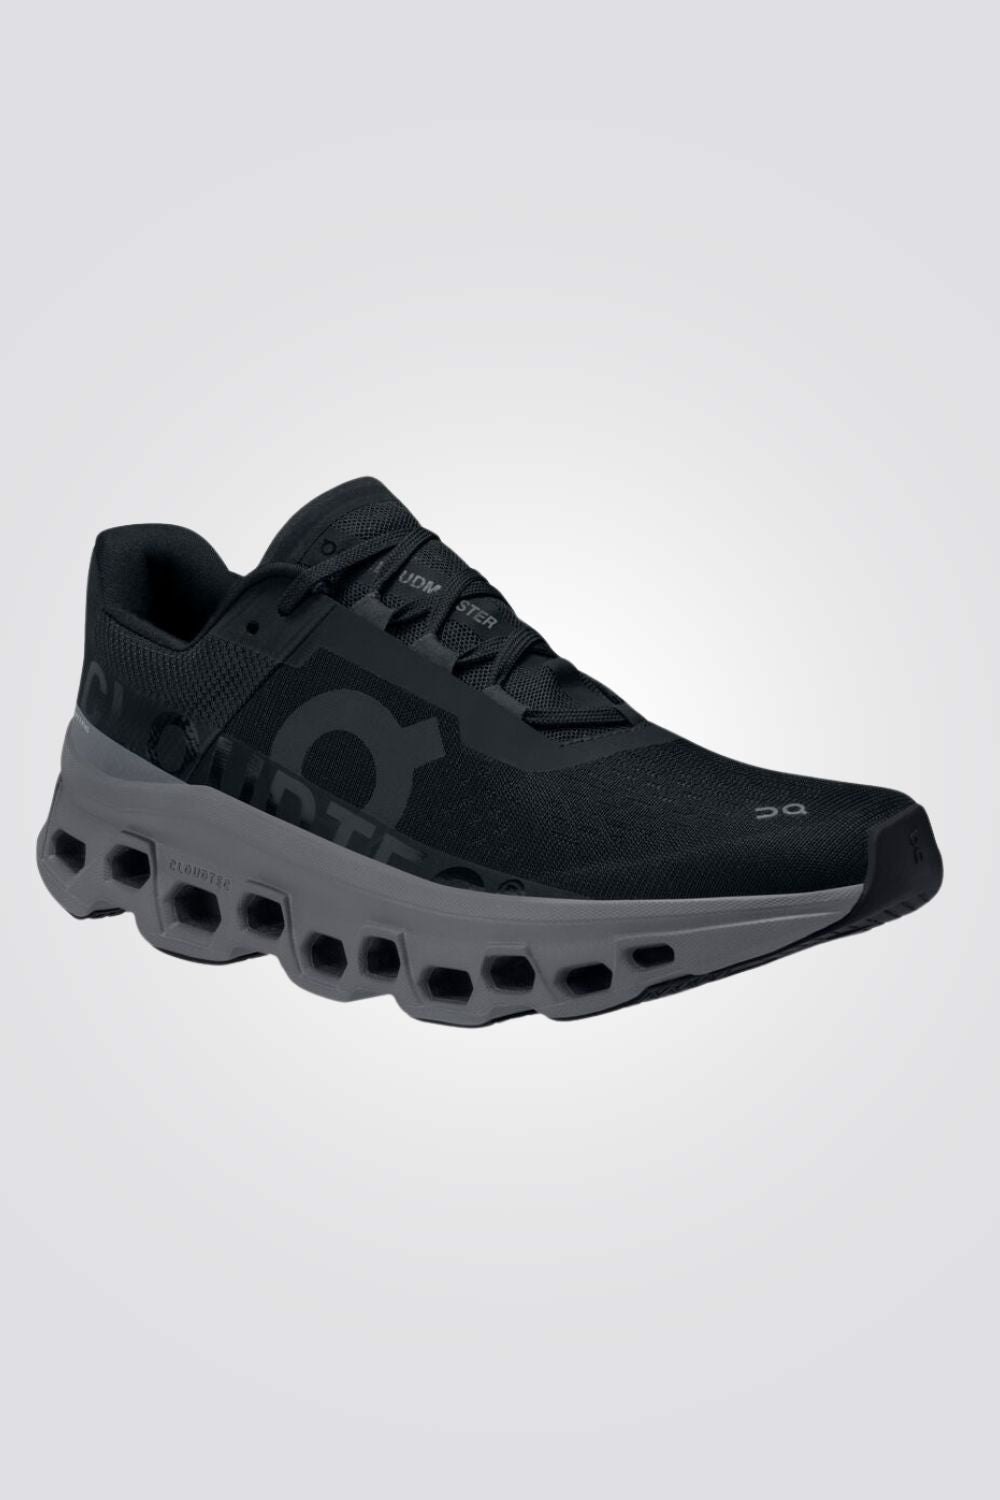 נעליים מבית המותג On Cloud בעלות טכנולוגית Cloud Tec שמייצרת סוליה המפחיתה את העומס על השרירים ועוטפת את הרגל ברכות בלתי מתפשרת.